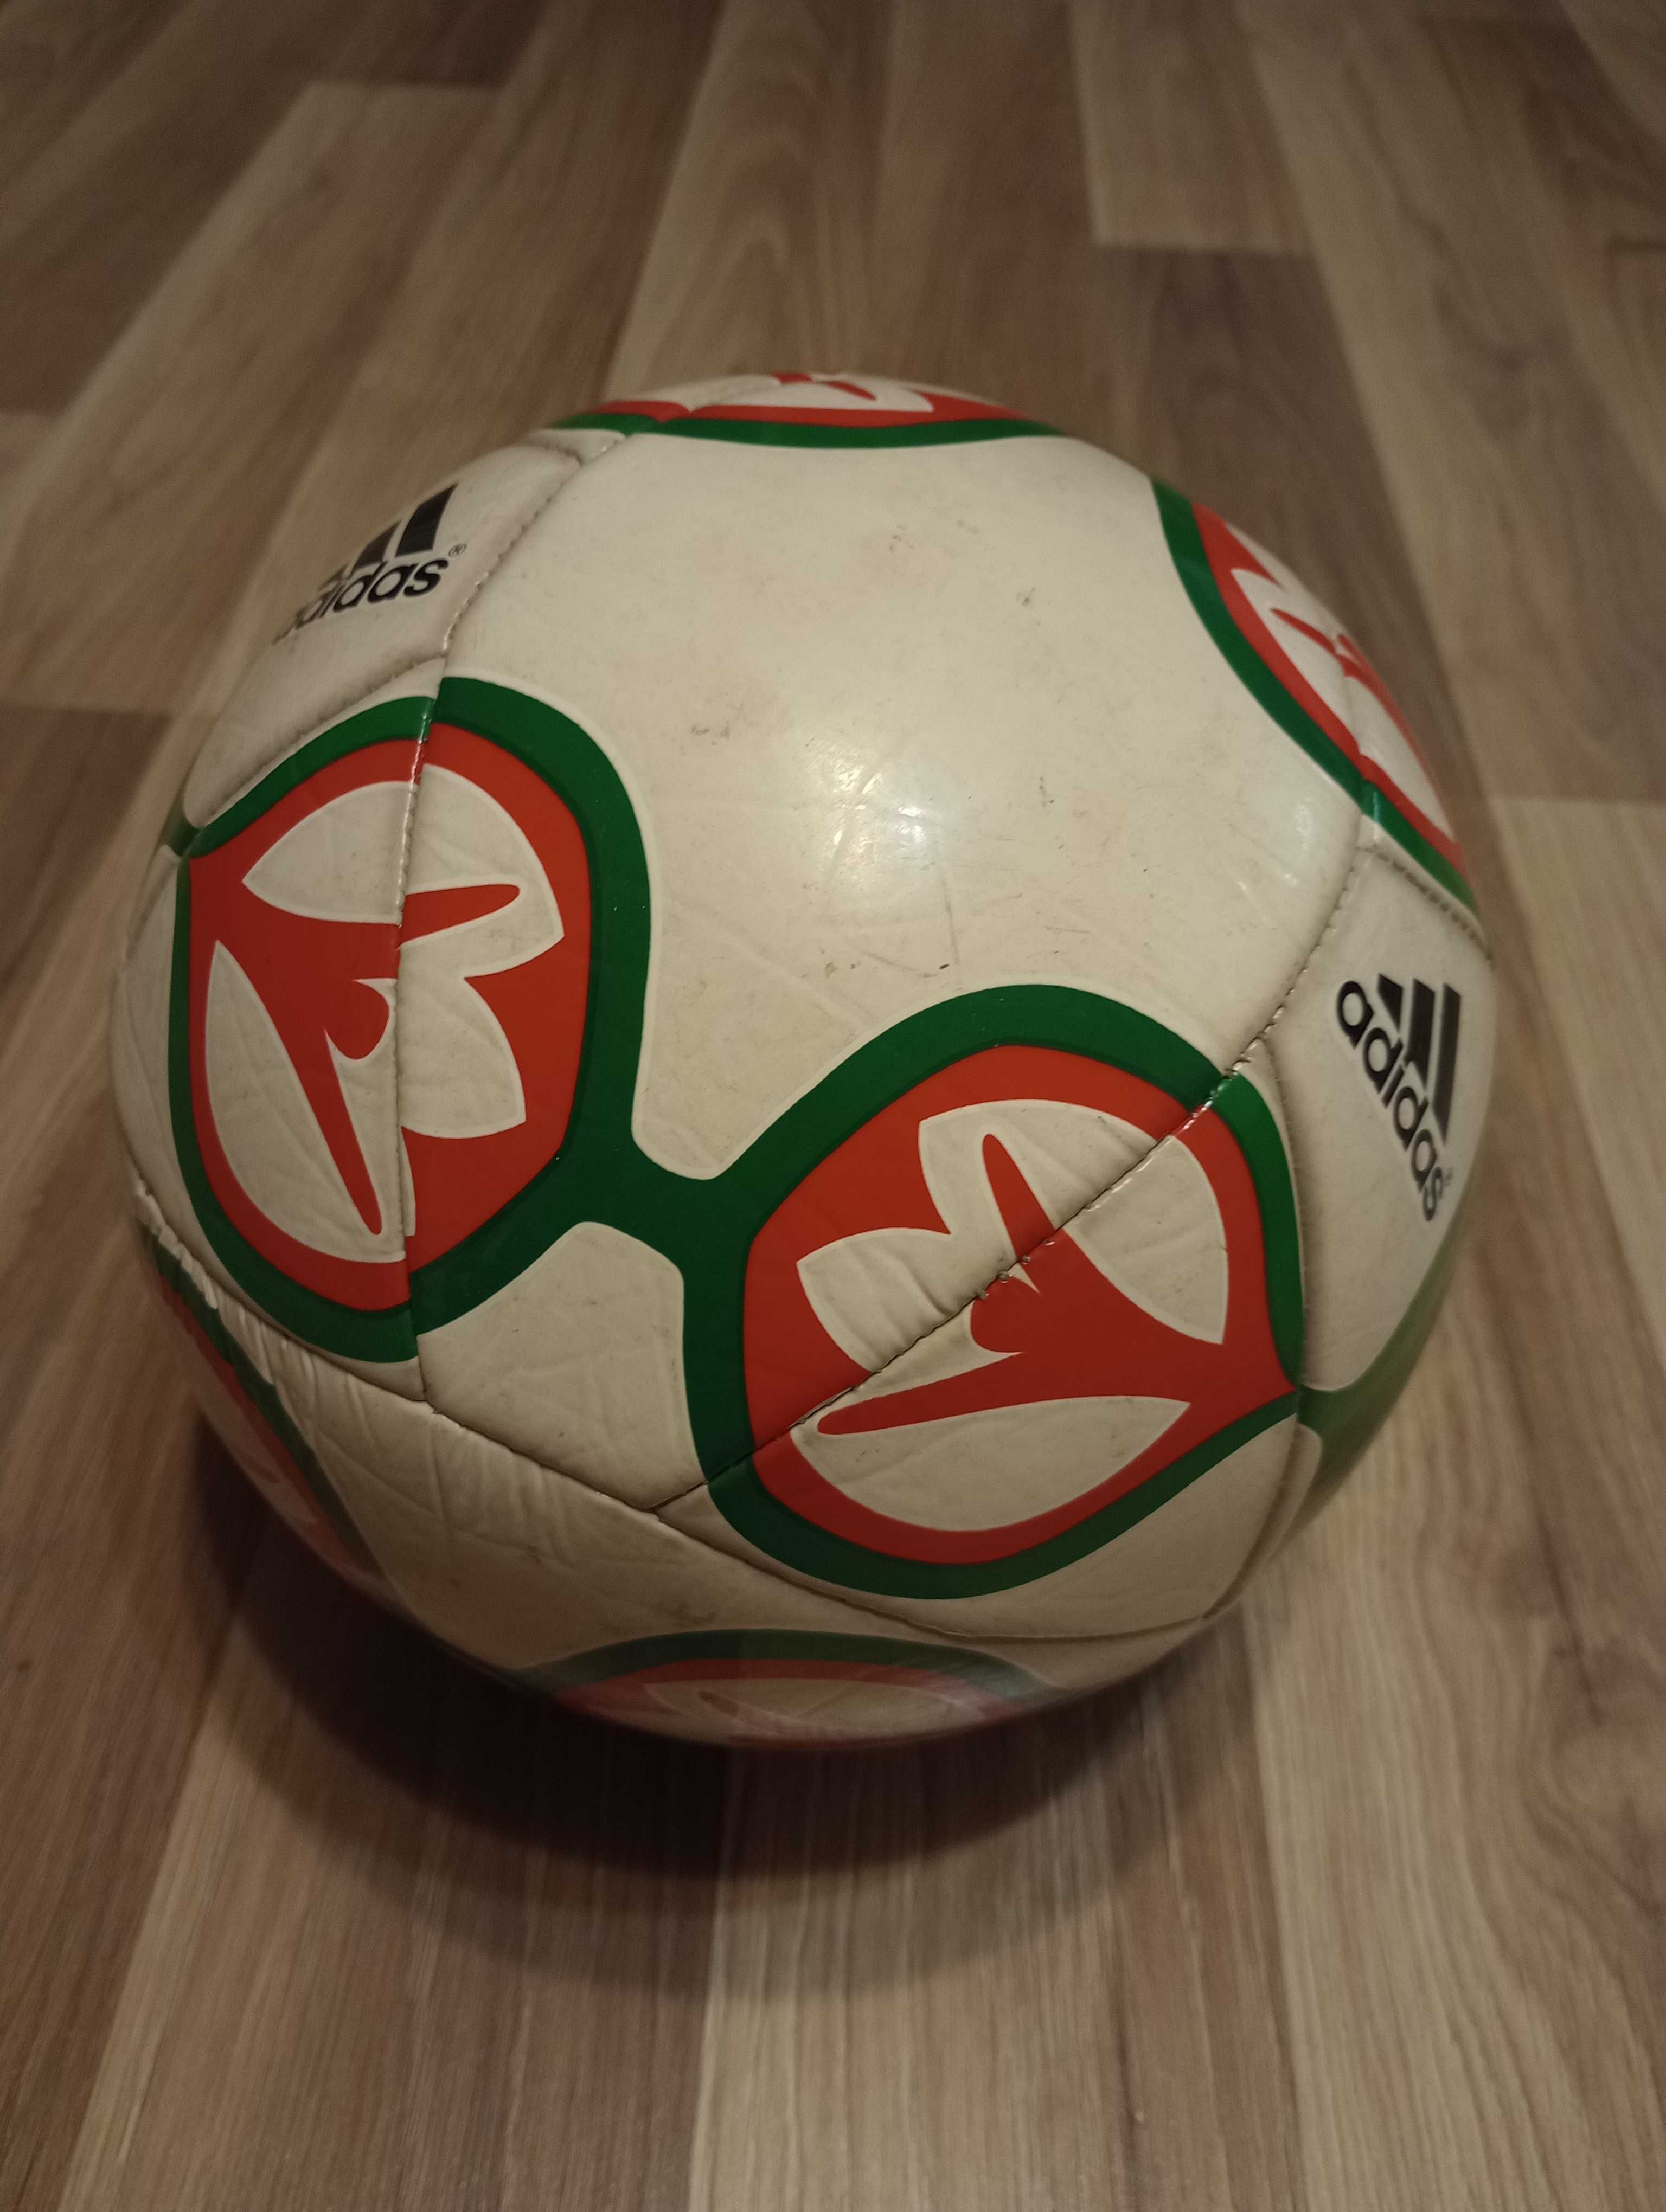 Piłka nożna Adidas limitowana edycja Castrol- Euro 2012, jak nowa.